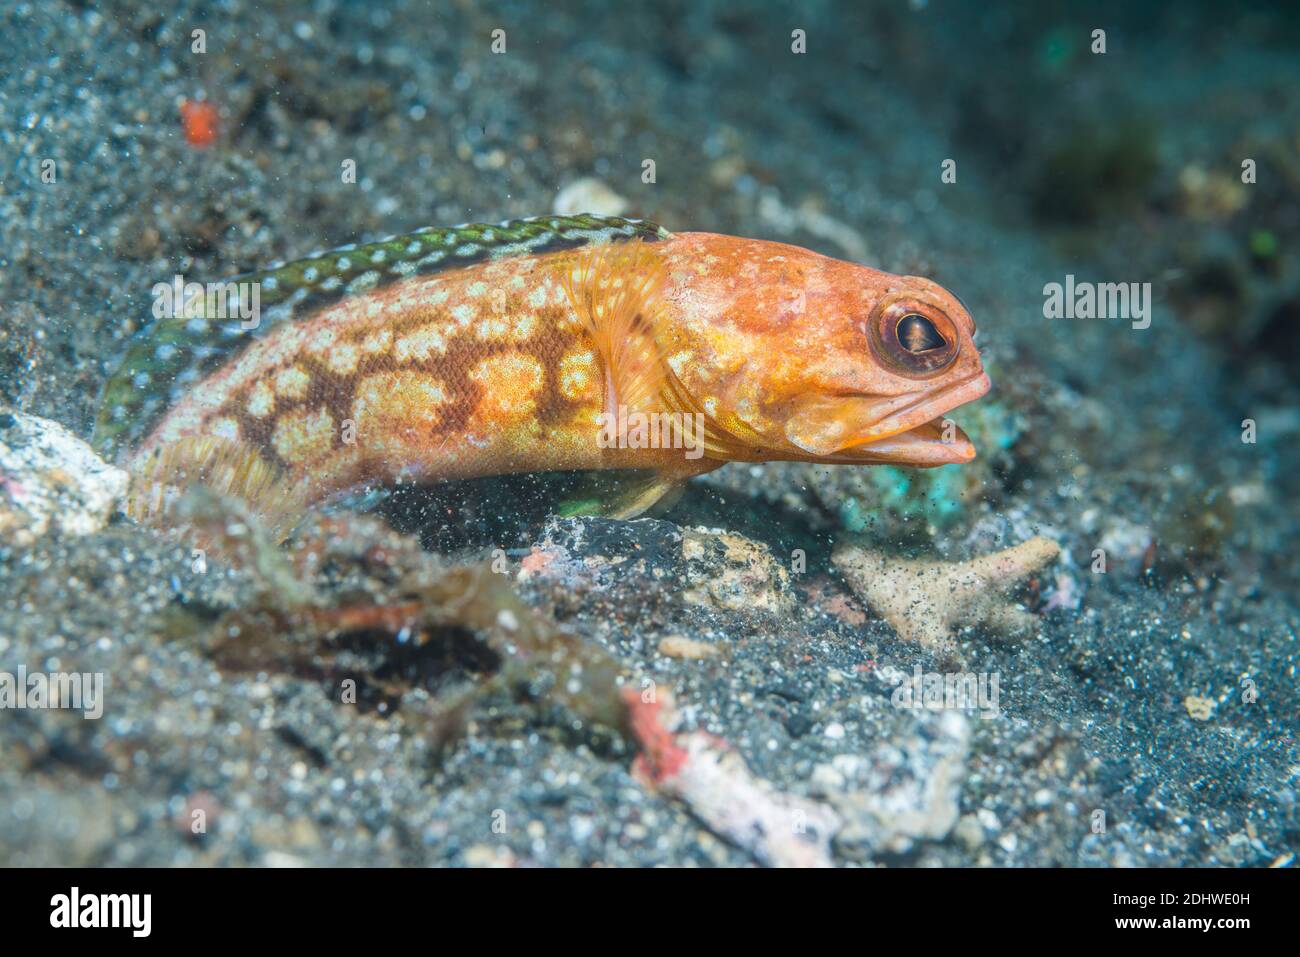 Blotched jawfish [Opistognathus latitabundus] outside its burrow.  Lembeh Strait, North Sulawesi, Indonesia. Stock Photo